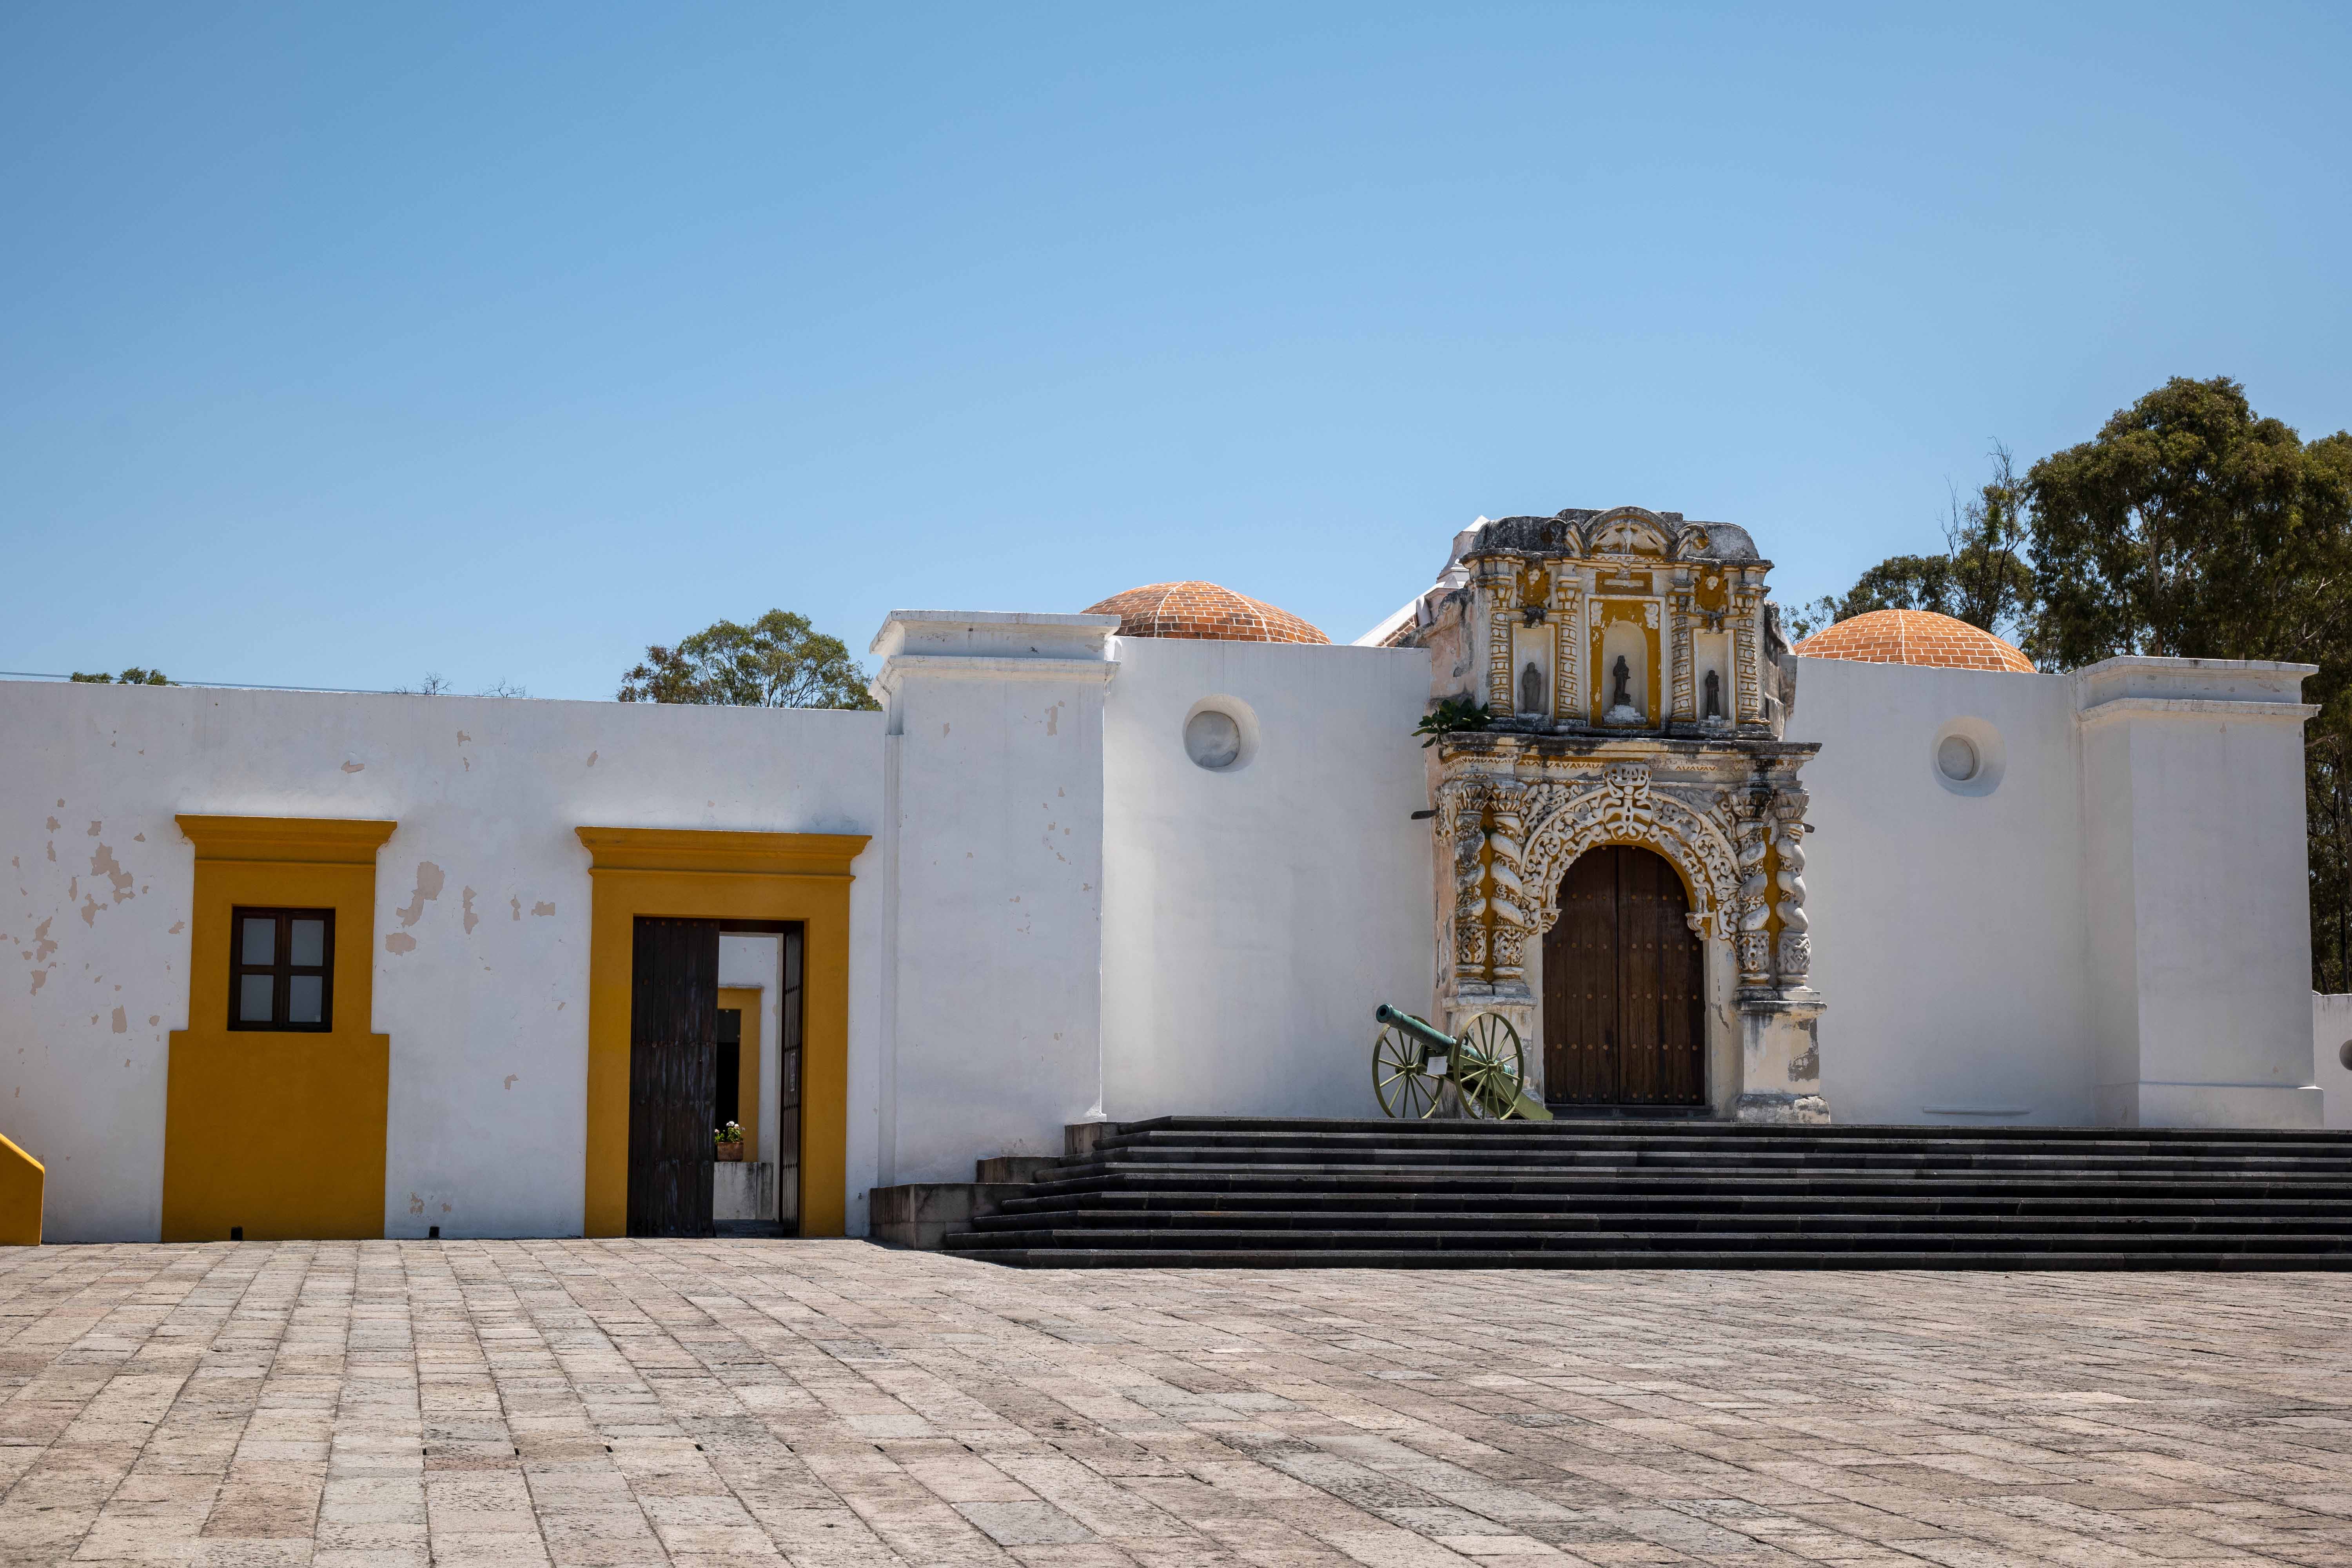 Zona Histórica de los Fuertes puebla travel guide mexico